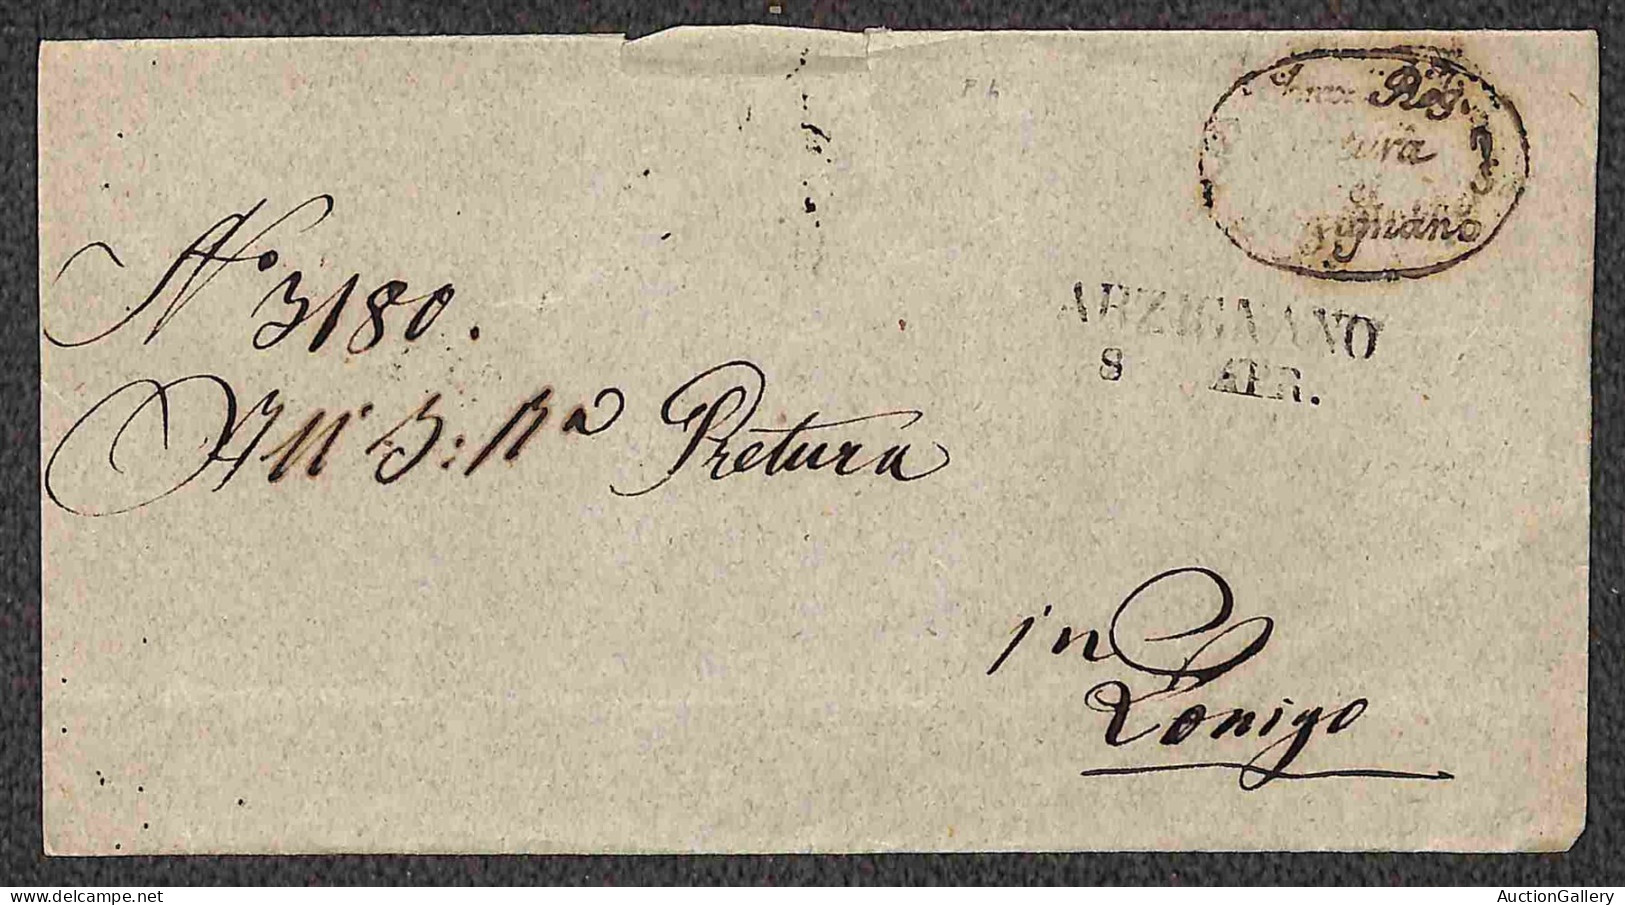 Lotti&Collezioni - PREFILATELICHE - 1821/1853 - Insieme di 5 lettere del periodo con annulli di Arzignano Annecy Ventimi